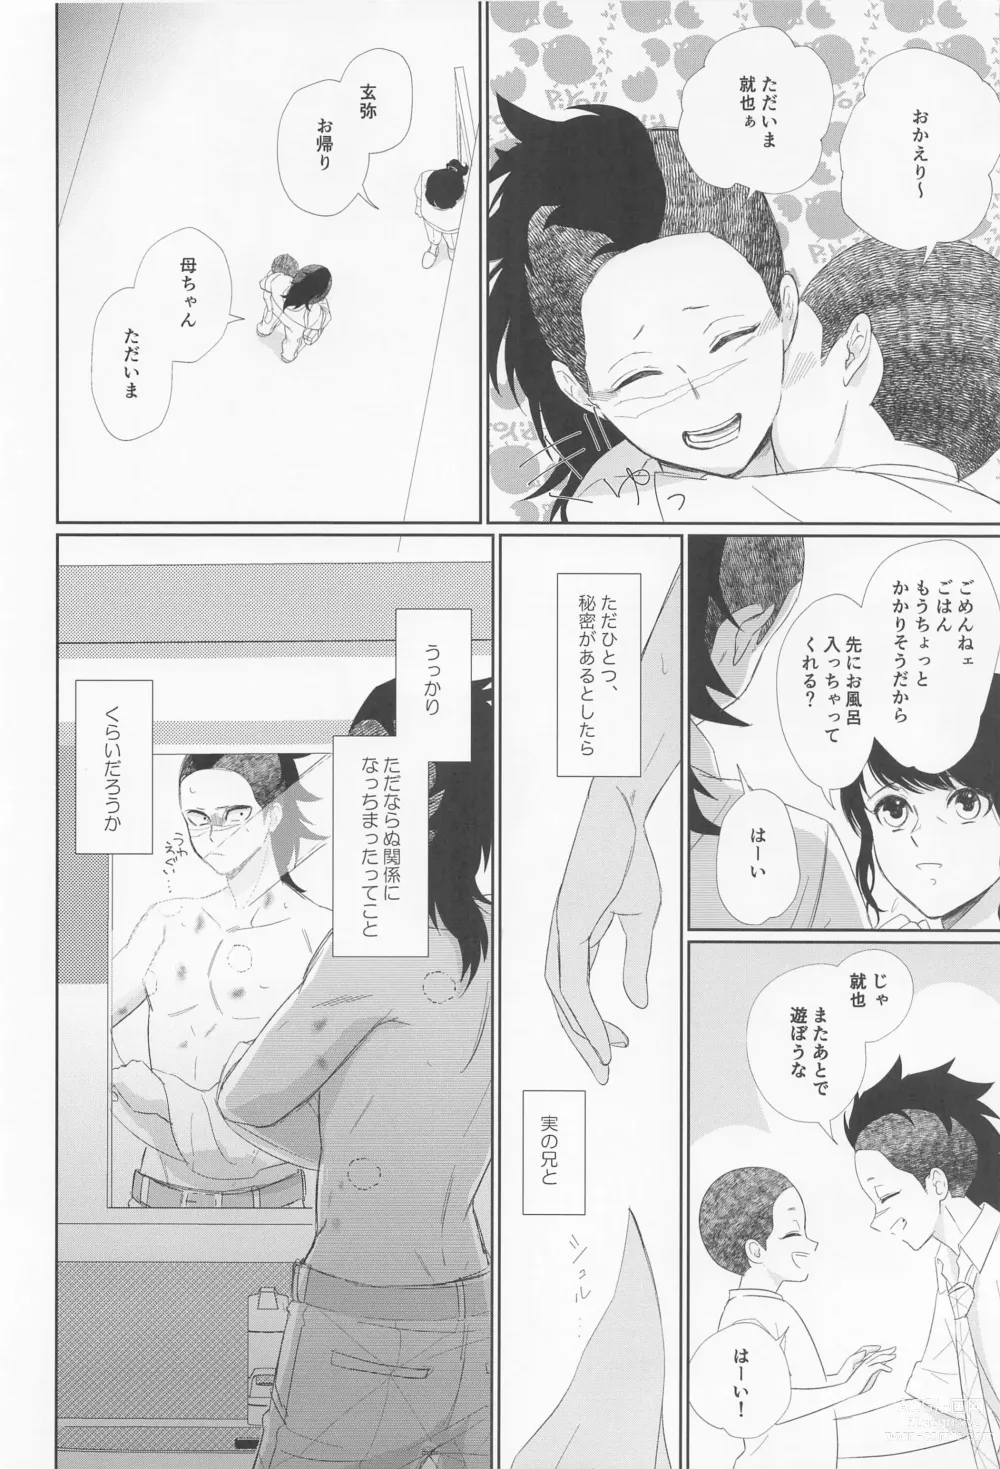 Page 8 of doujinshi Dare ni Demo Himitsu wa Aru - Everyone has secrets.